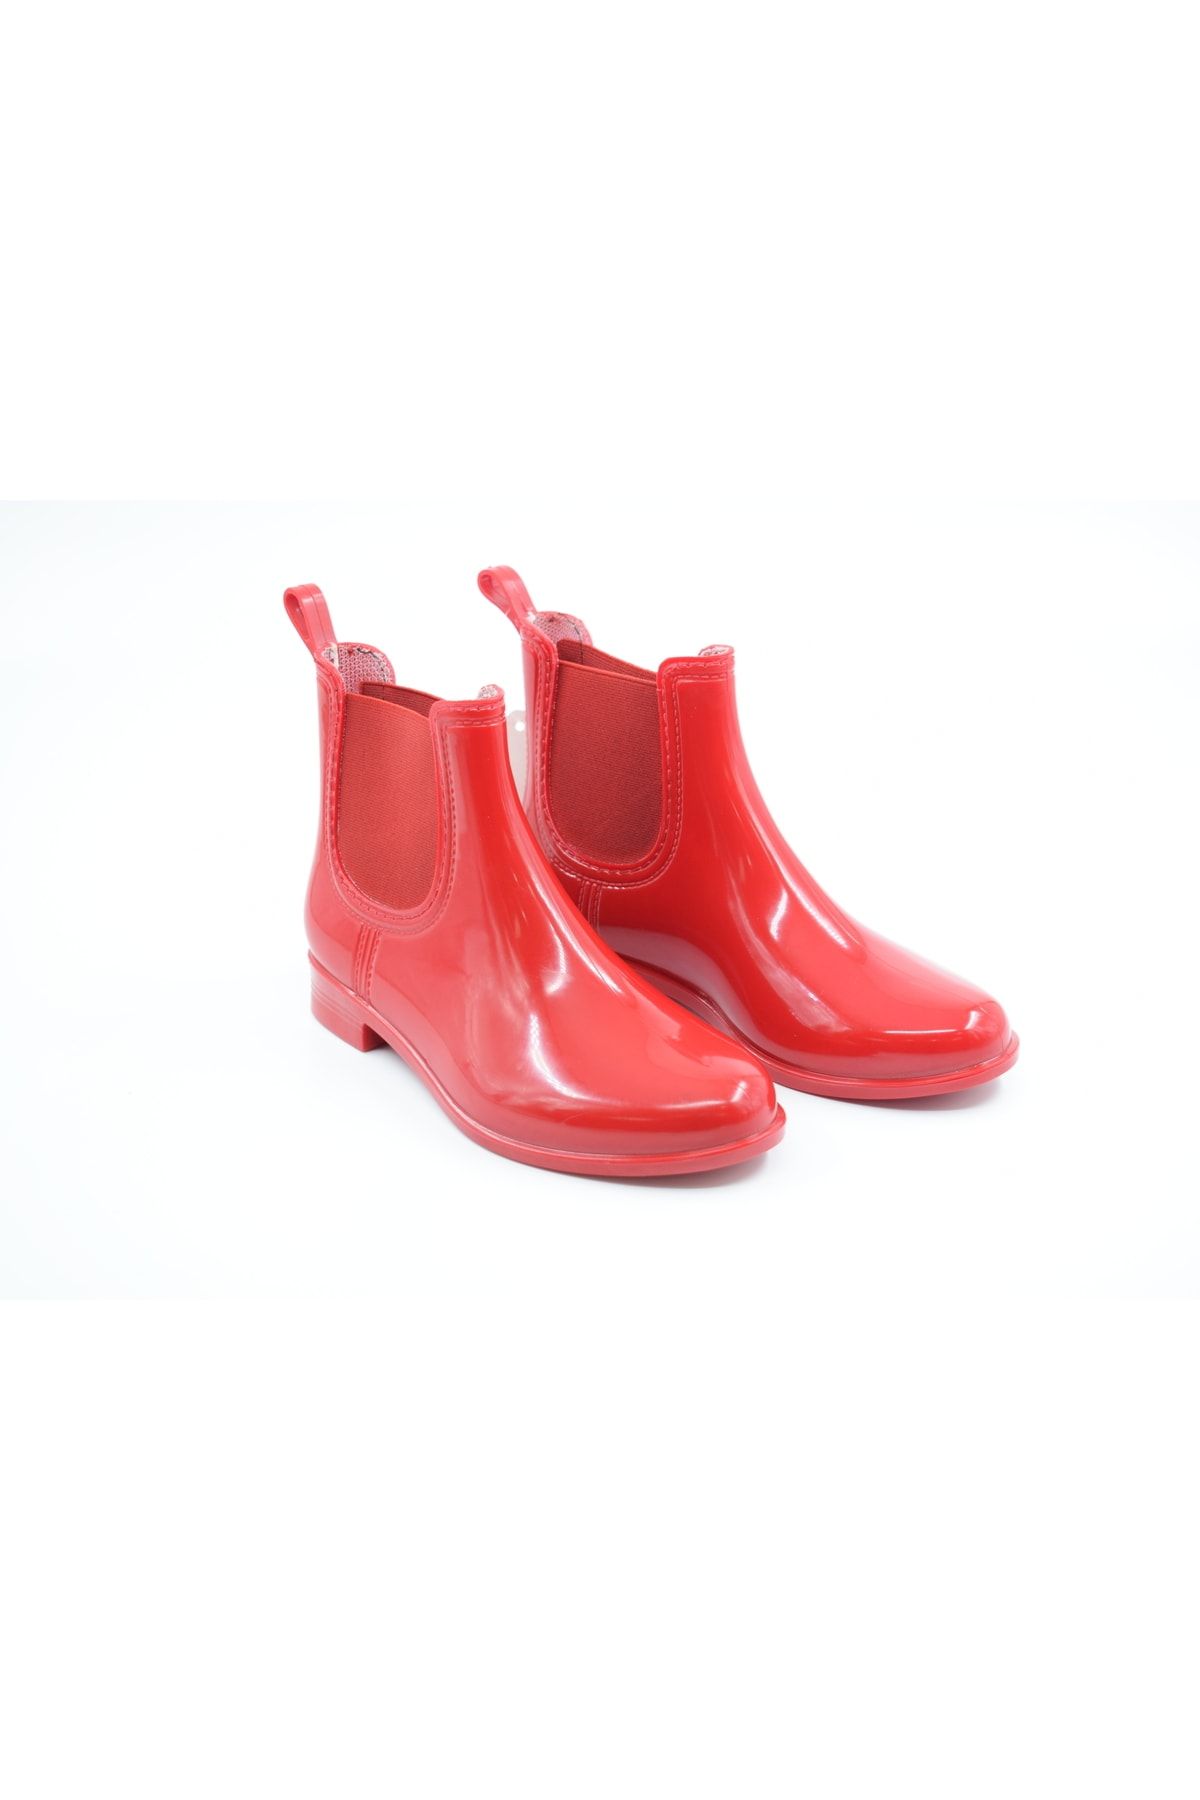 Lily Comfy Kırmızı Çocuk Yağmur Botu Su Geçirmez